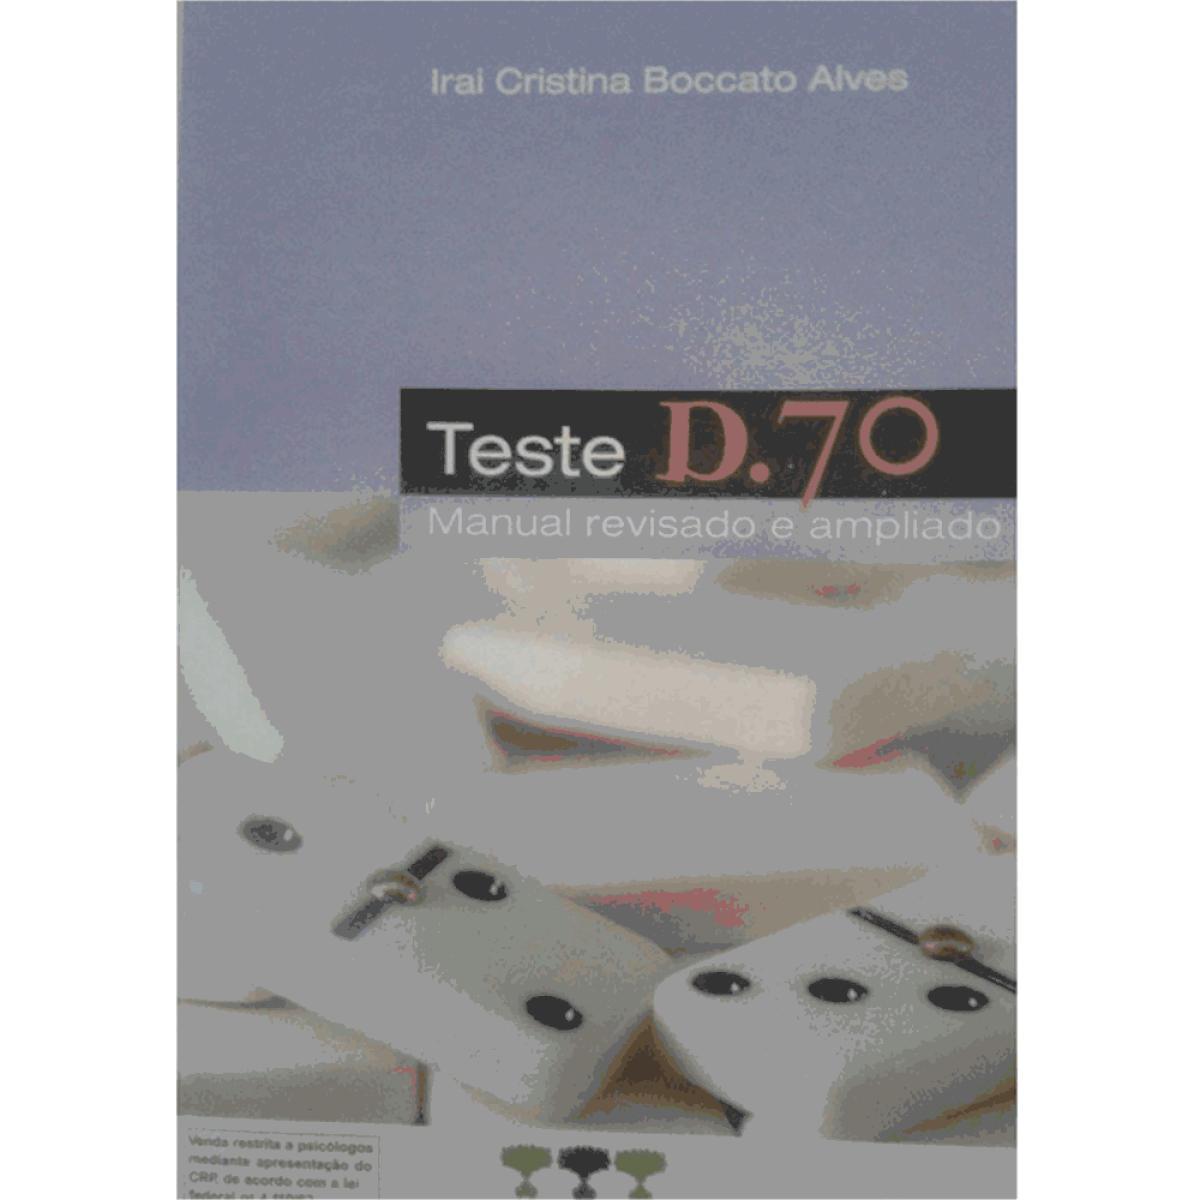 Cherry detergent Shift D.70 - Teste de Inteligência Não Verbal - Manual